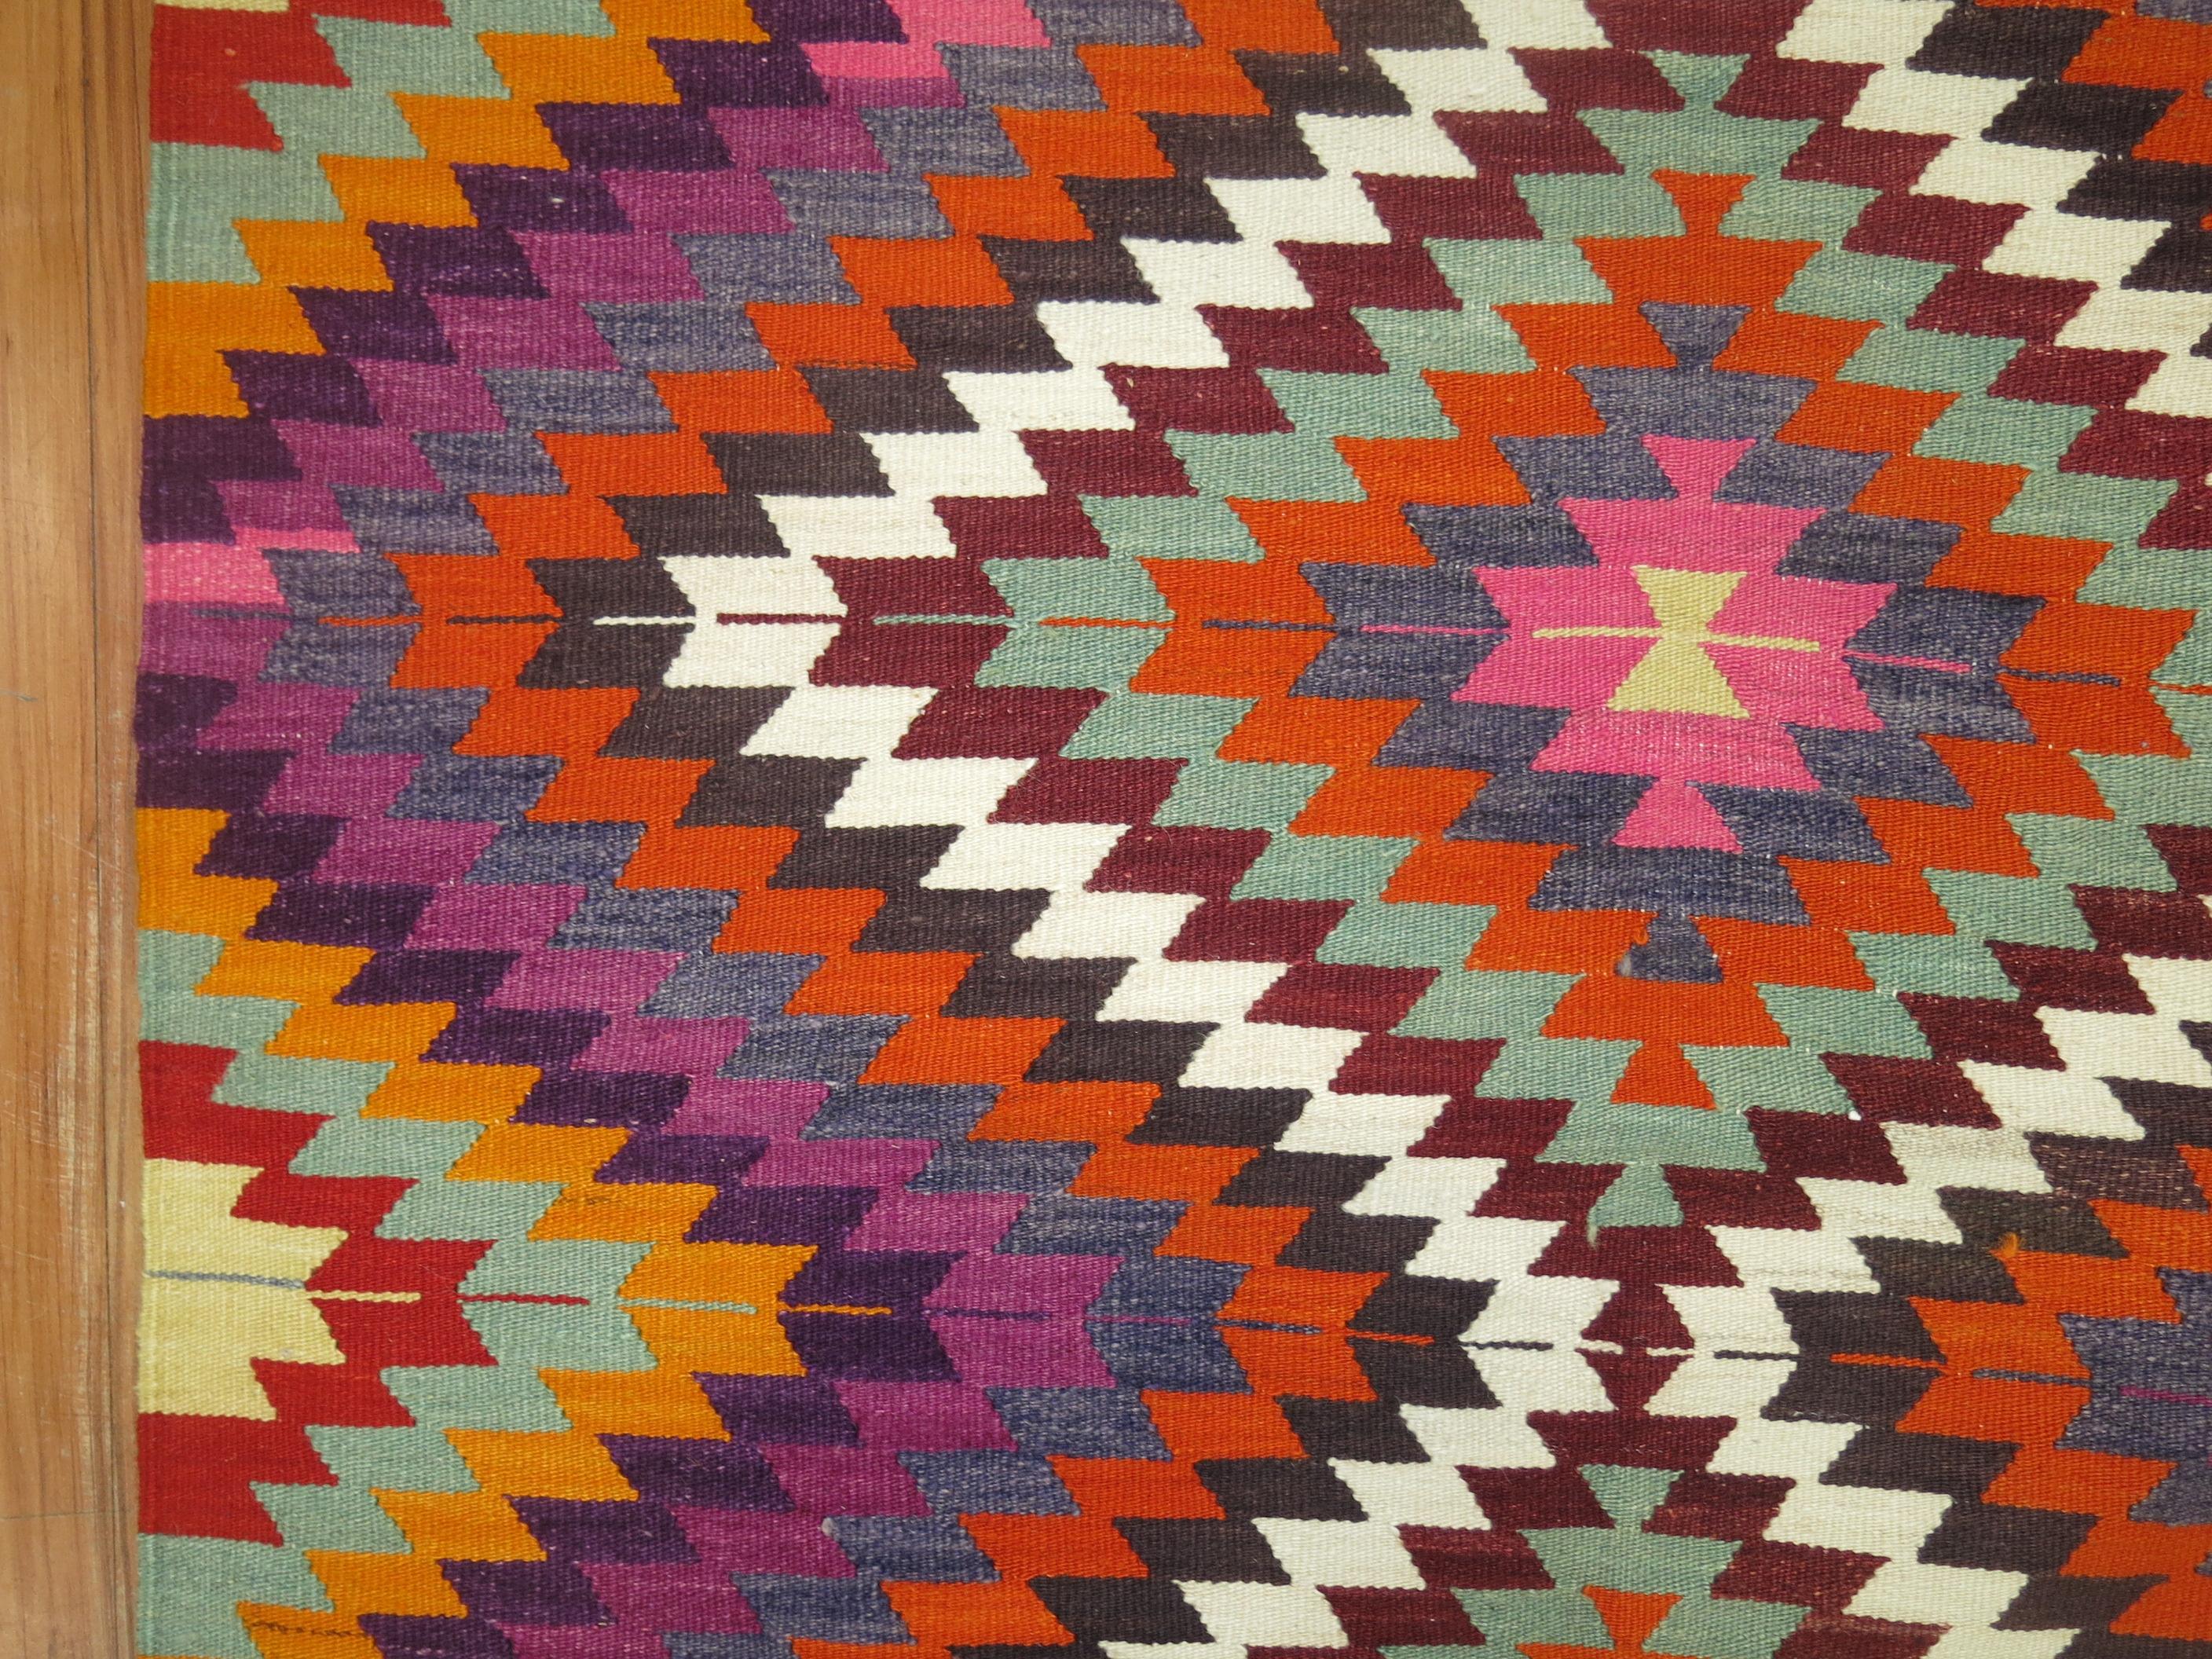 bohemian rugs